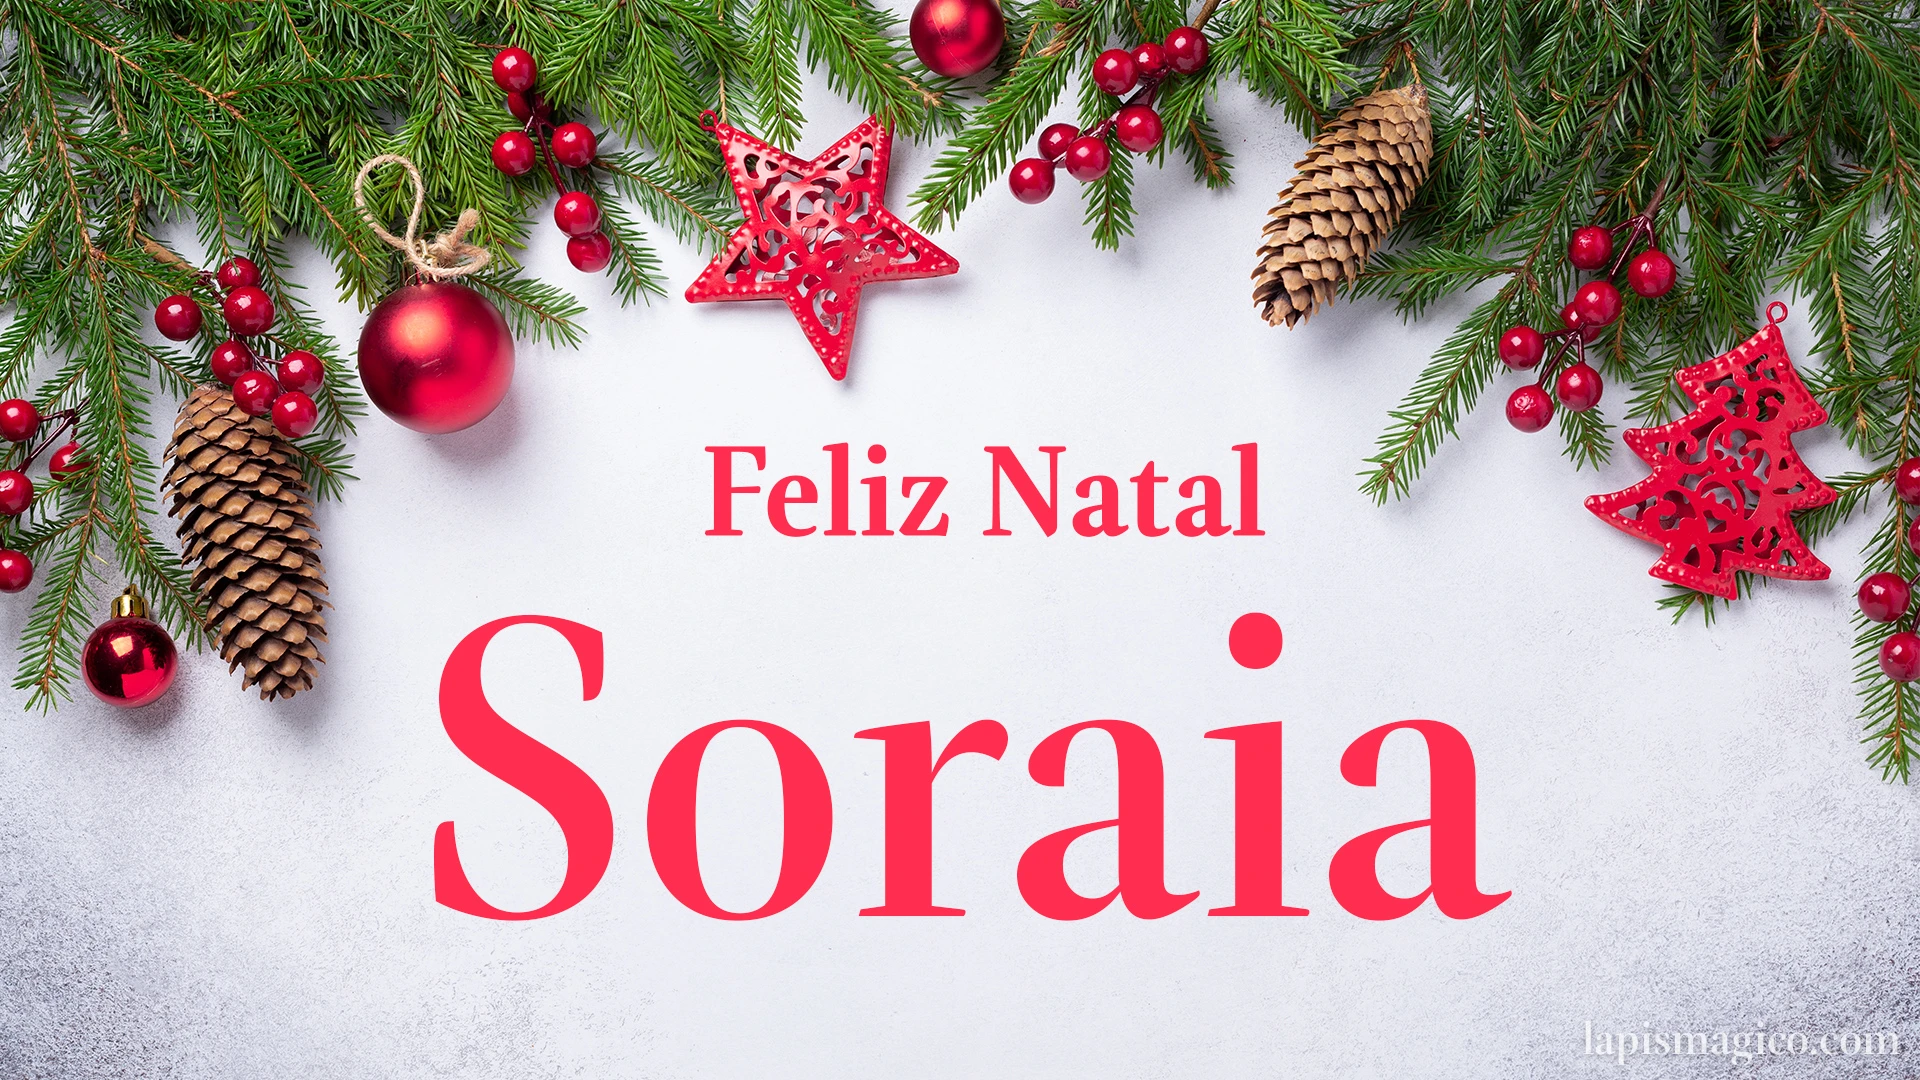 Oh Soraia, cinco postais de Feliz Natal Postal com o teu nome